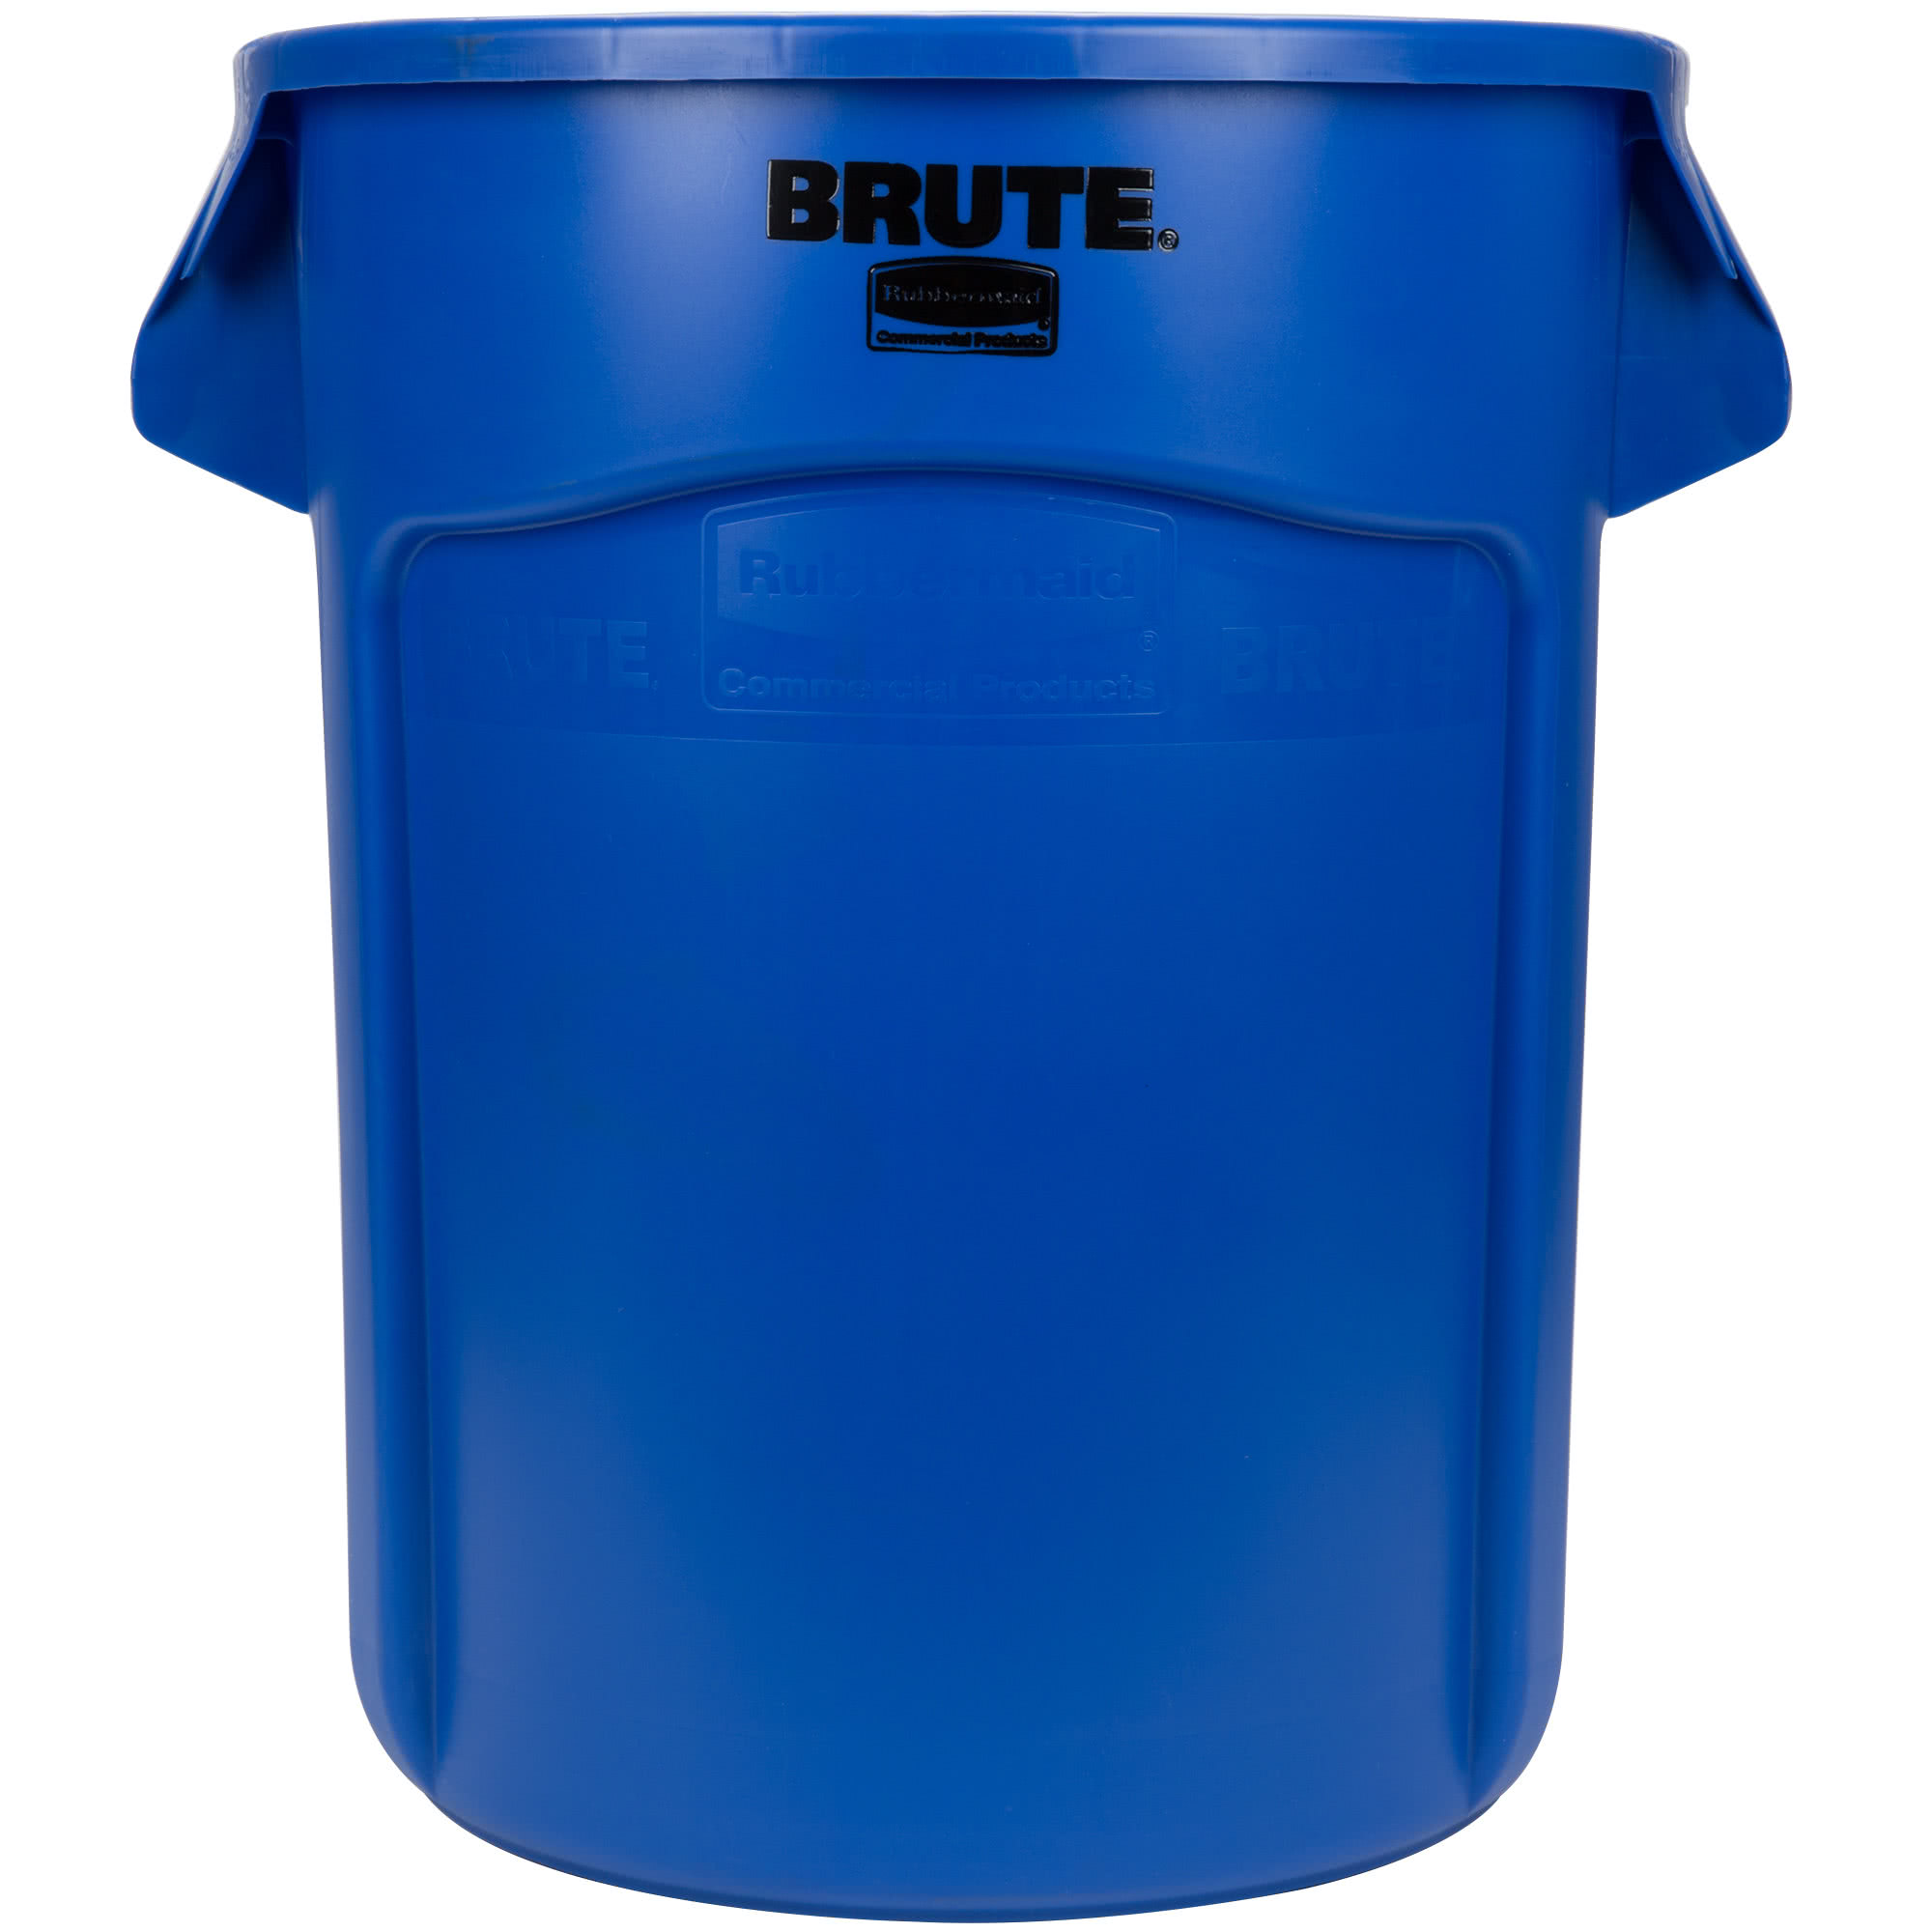 Rubbermaid FG262000BLUE contenedor Brute color azul con capacidad para 20 galones